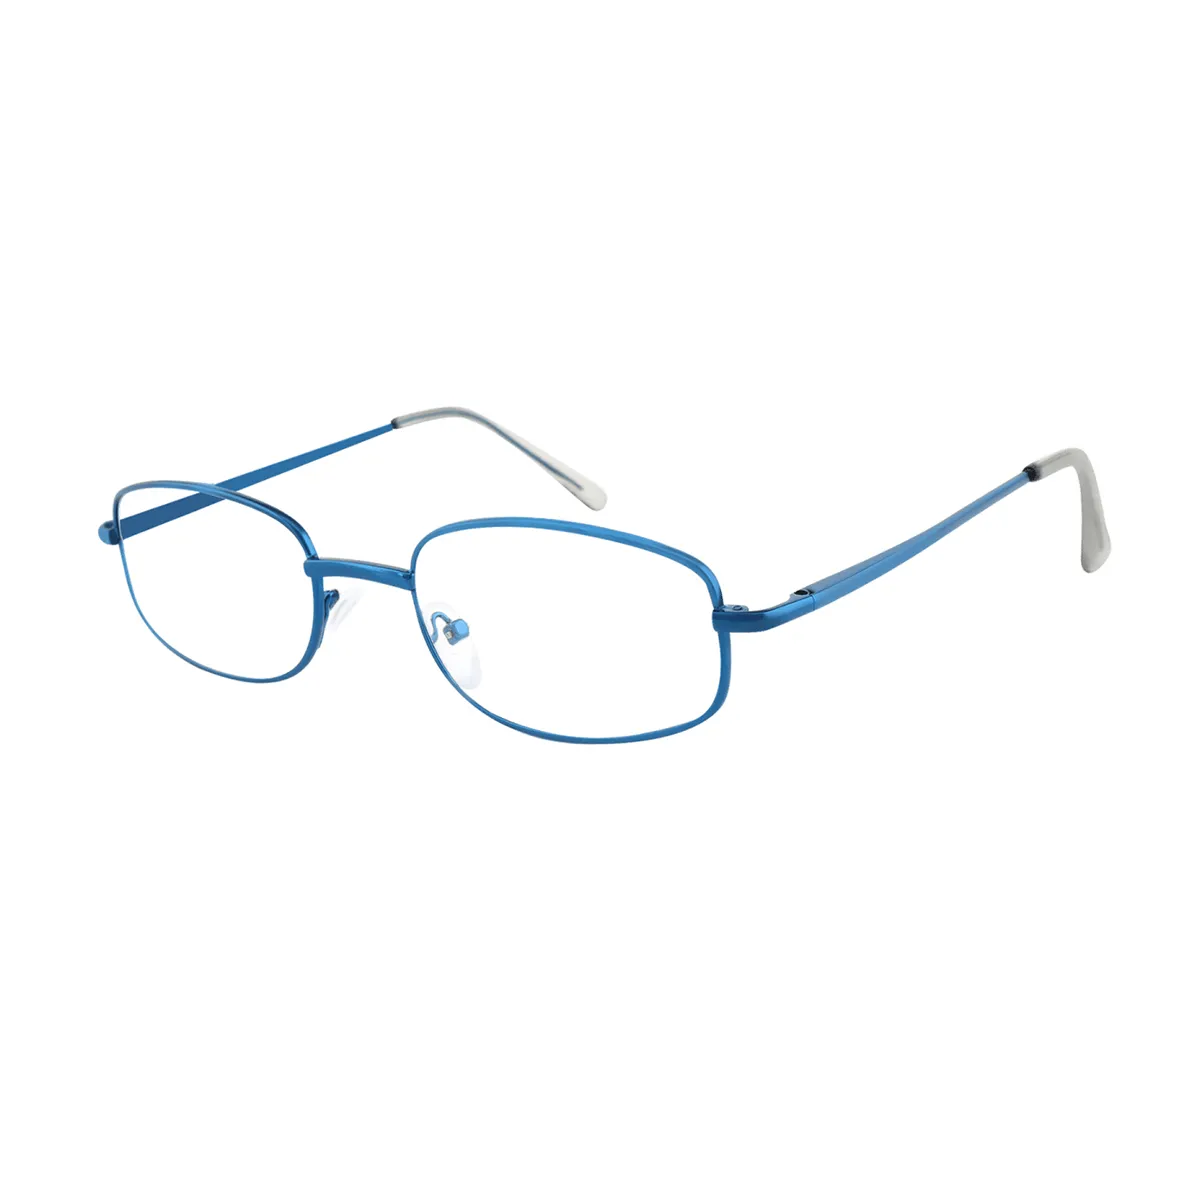 Classic Oval Blue Eyeglasses for Women & Men